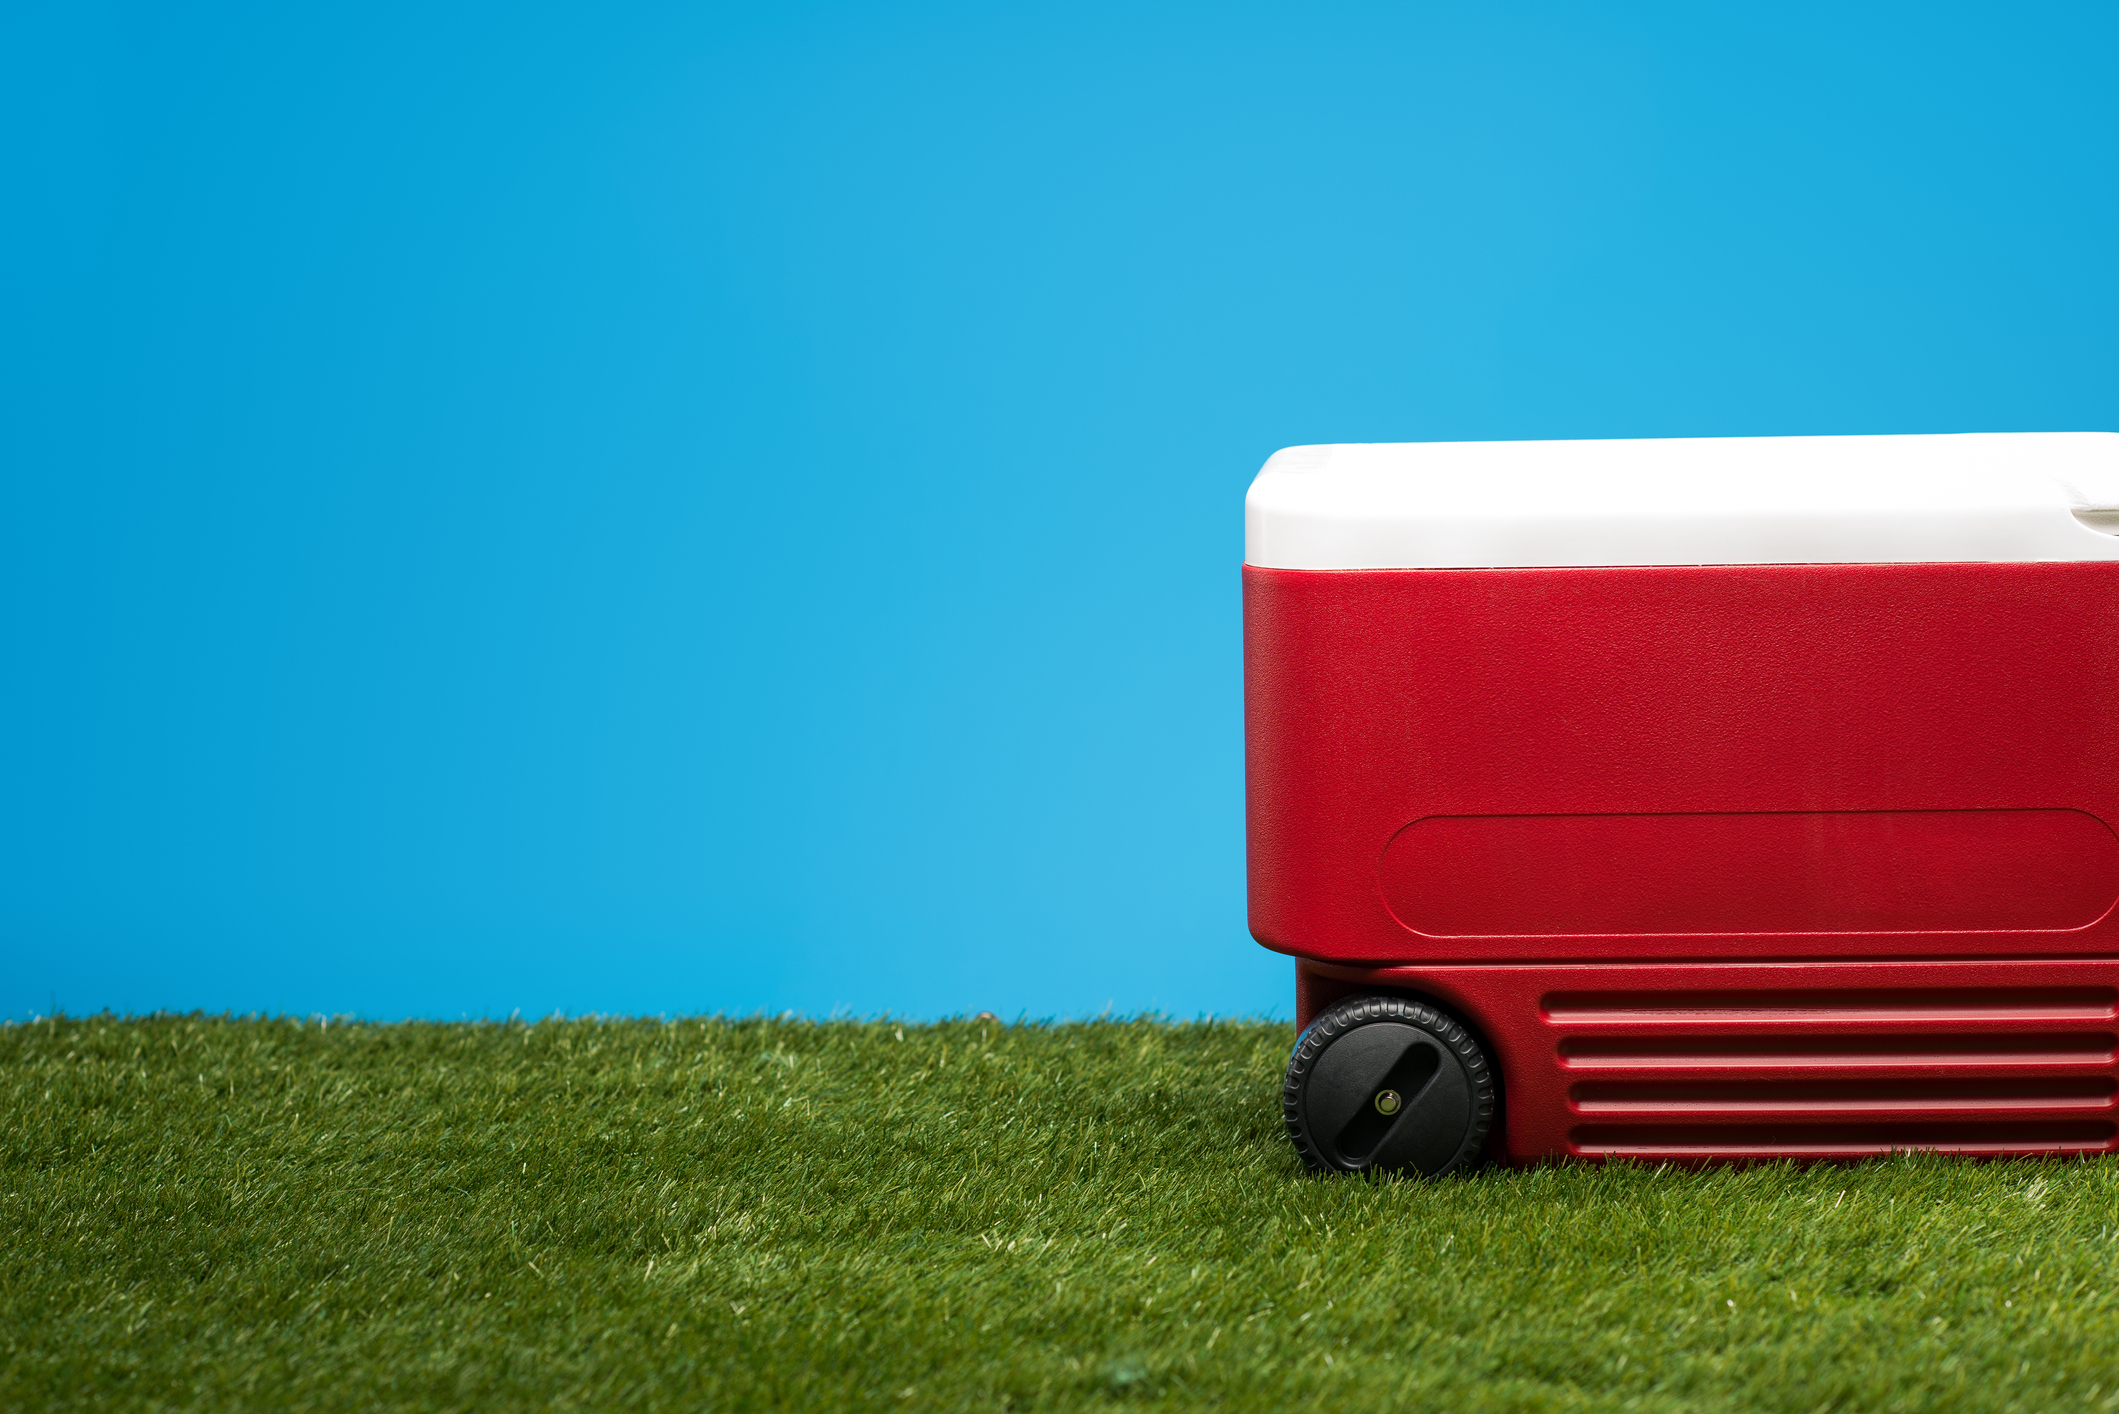 Cooler on grass